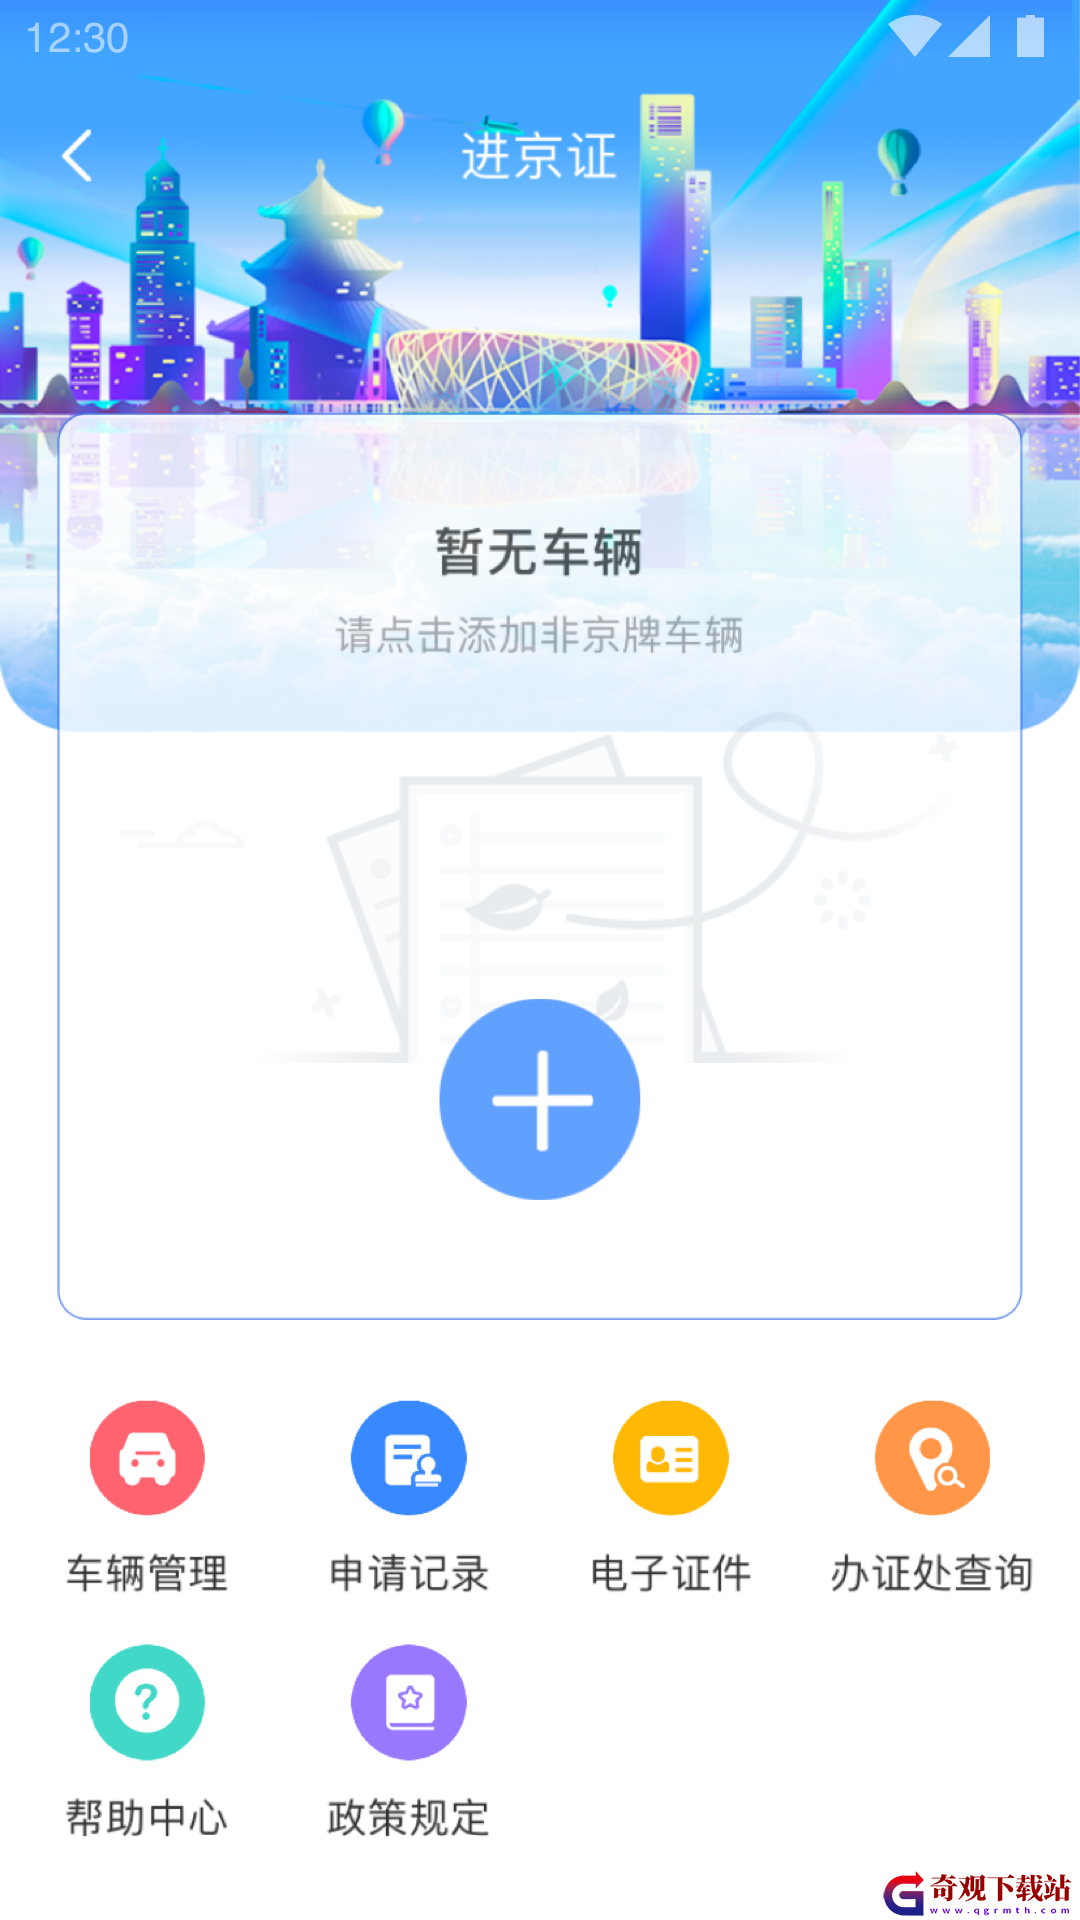 北京交*
app,北京交*
